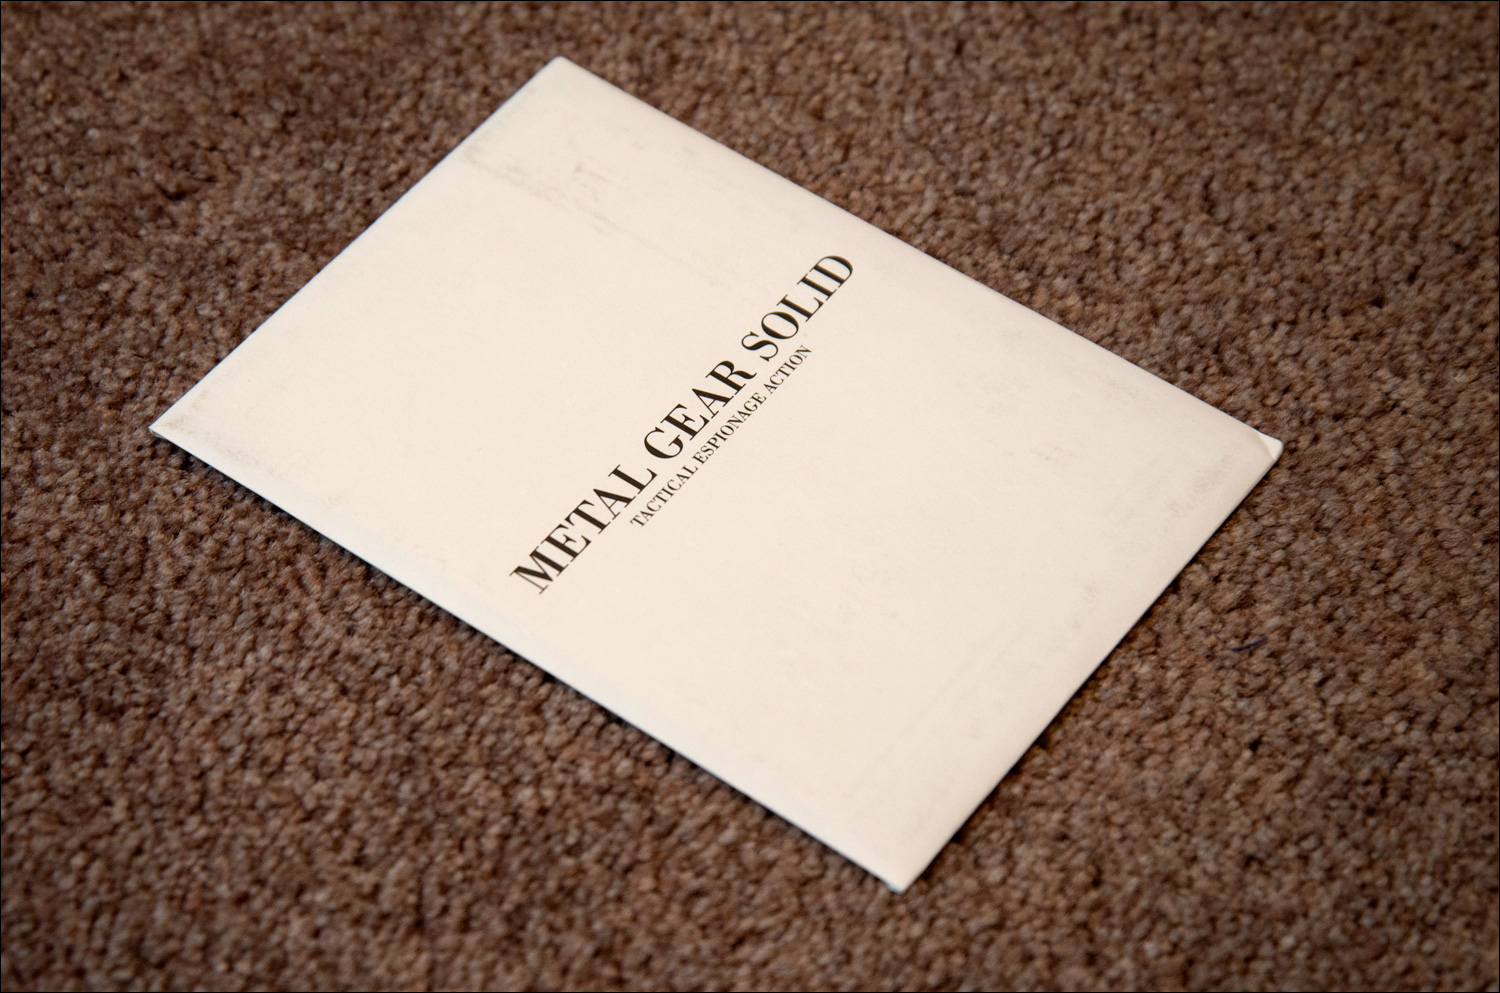 Metal-Gear-Solid-Premium-Package-Postcards-Envelope